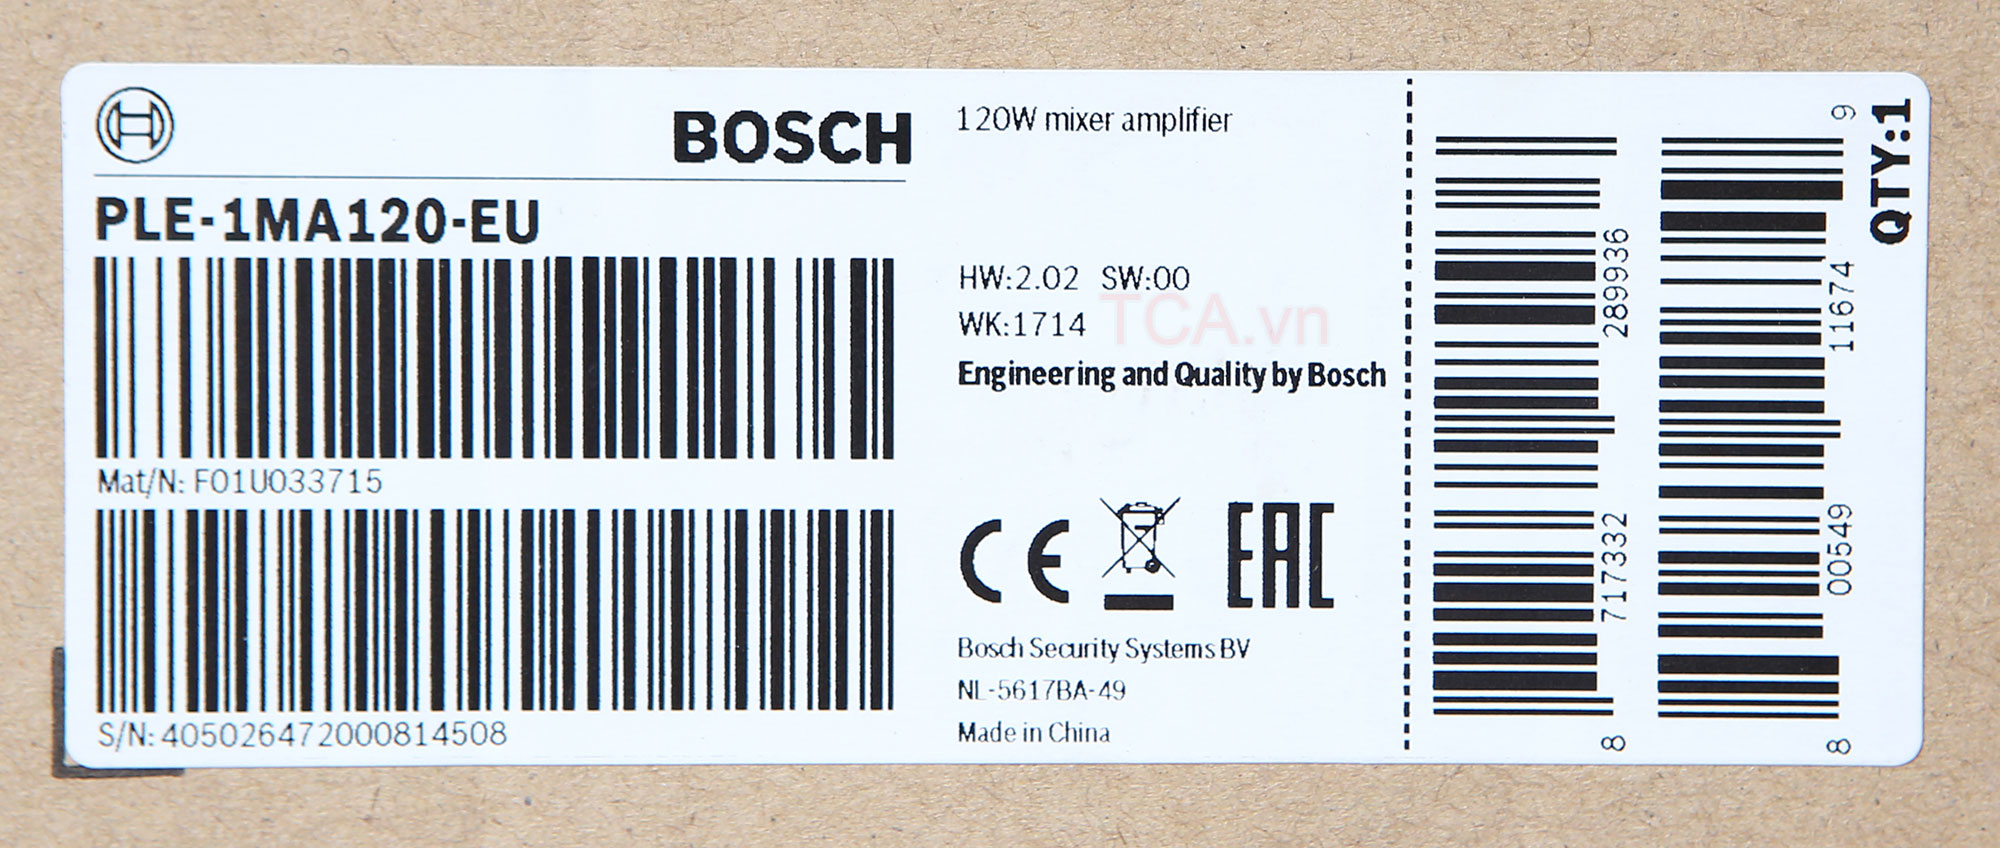 Amply mixer Bosch PLE-1MA120-EU